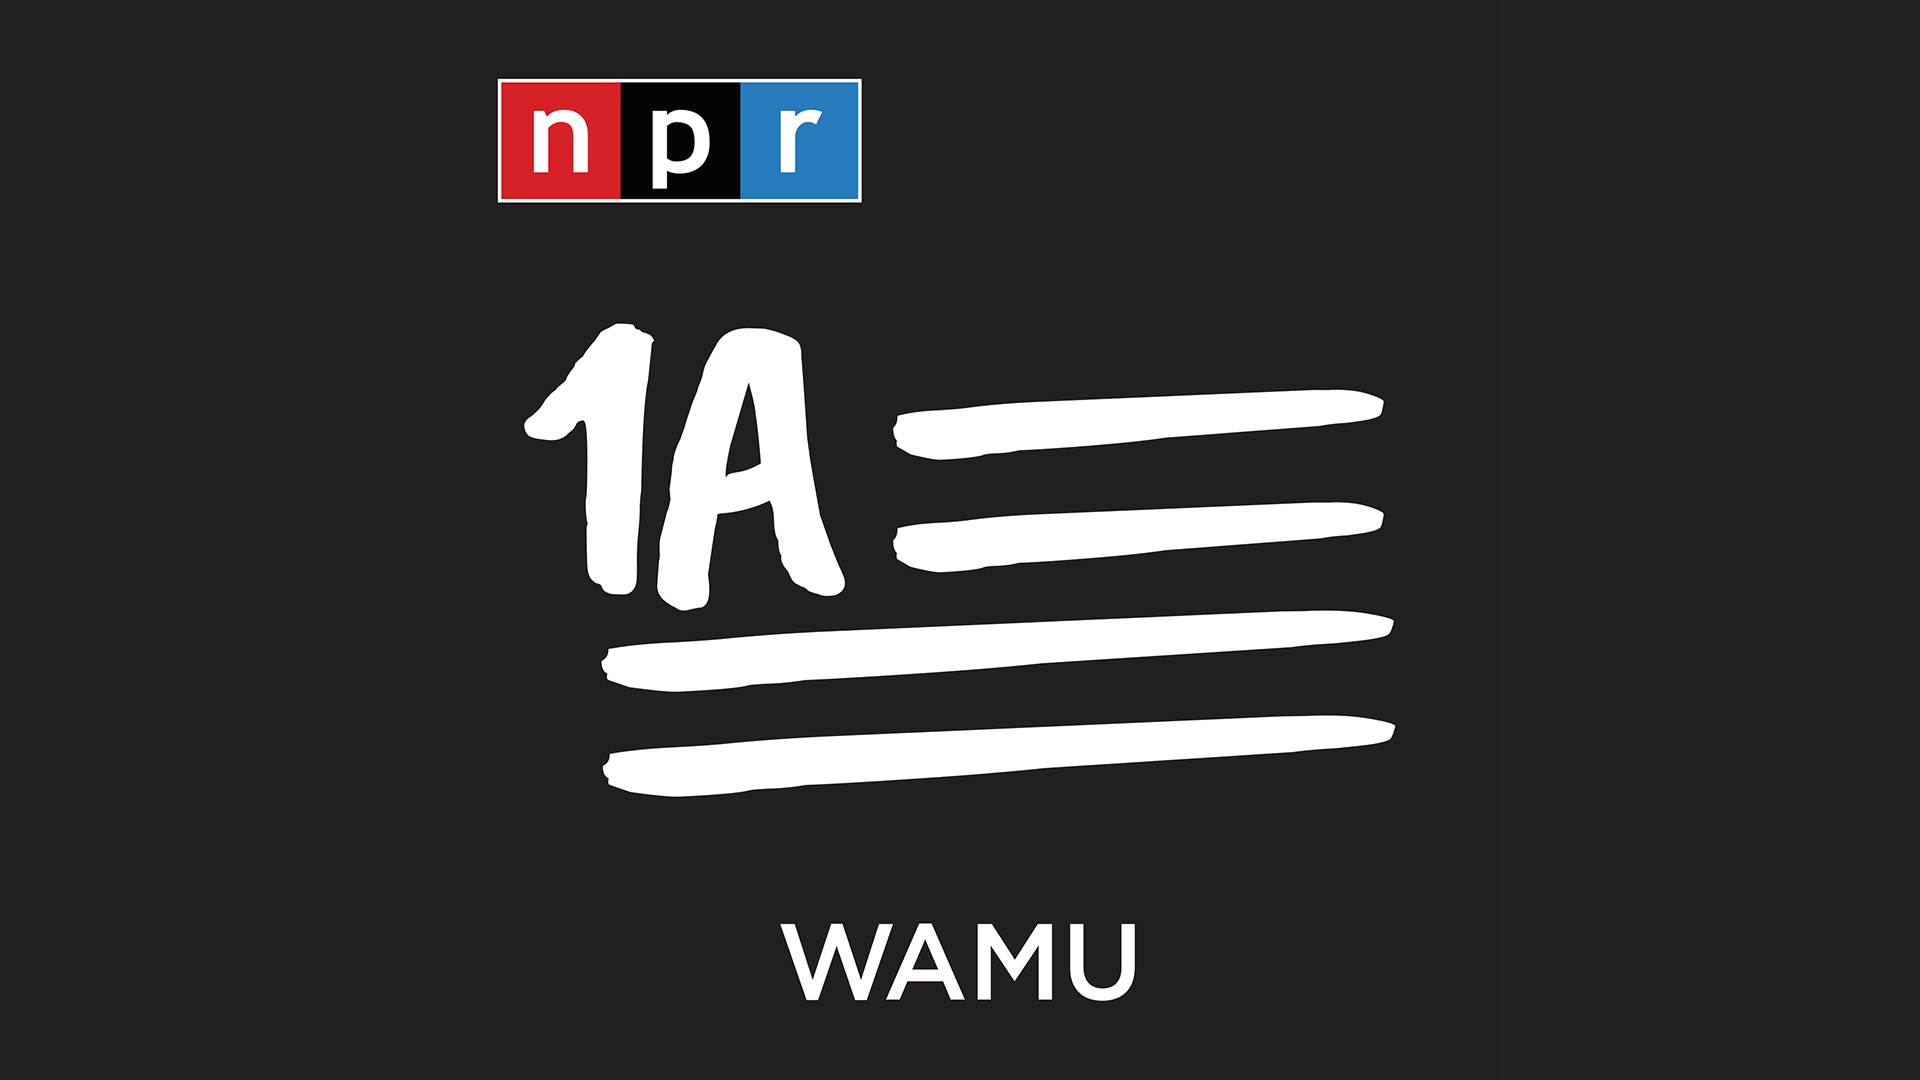 1A from NPR & WAMU program logo